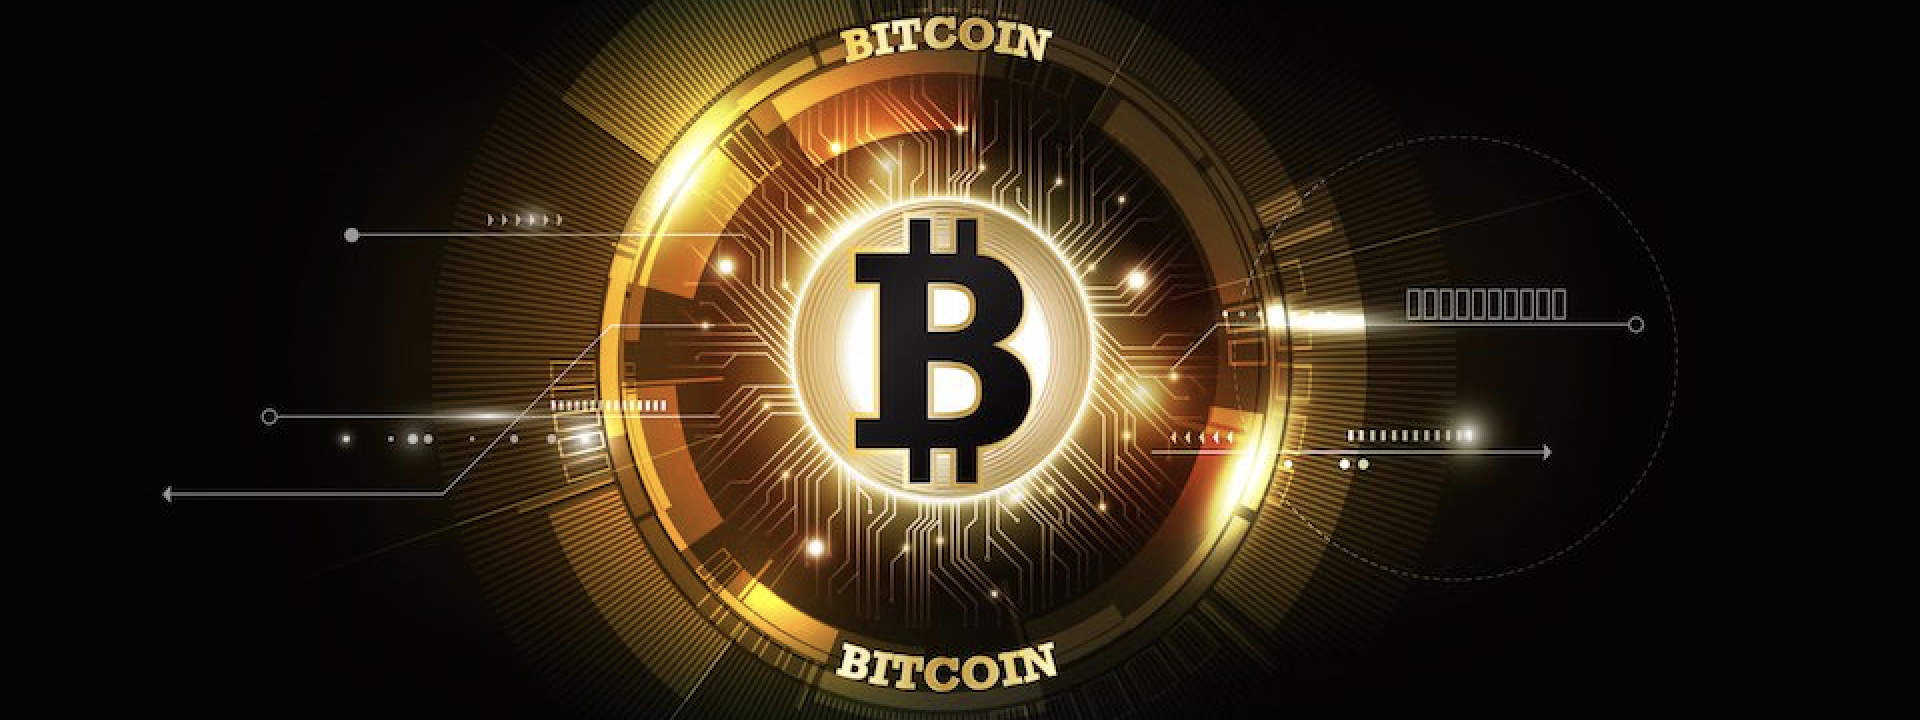 Hôm nay trade coin gì? - Ngày 30/07: Tất cả hướng mắt về "lãnh tụ" Bitcoin!